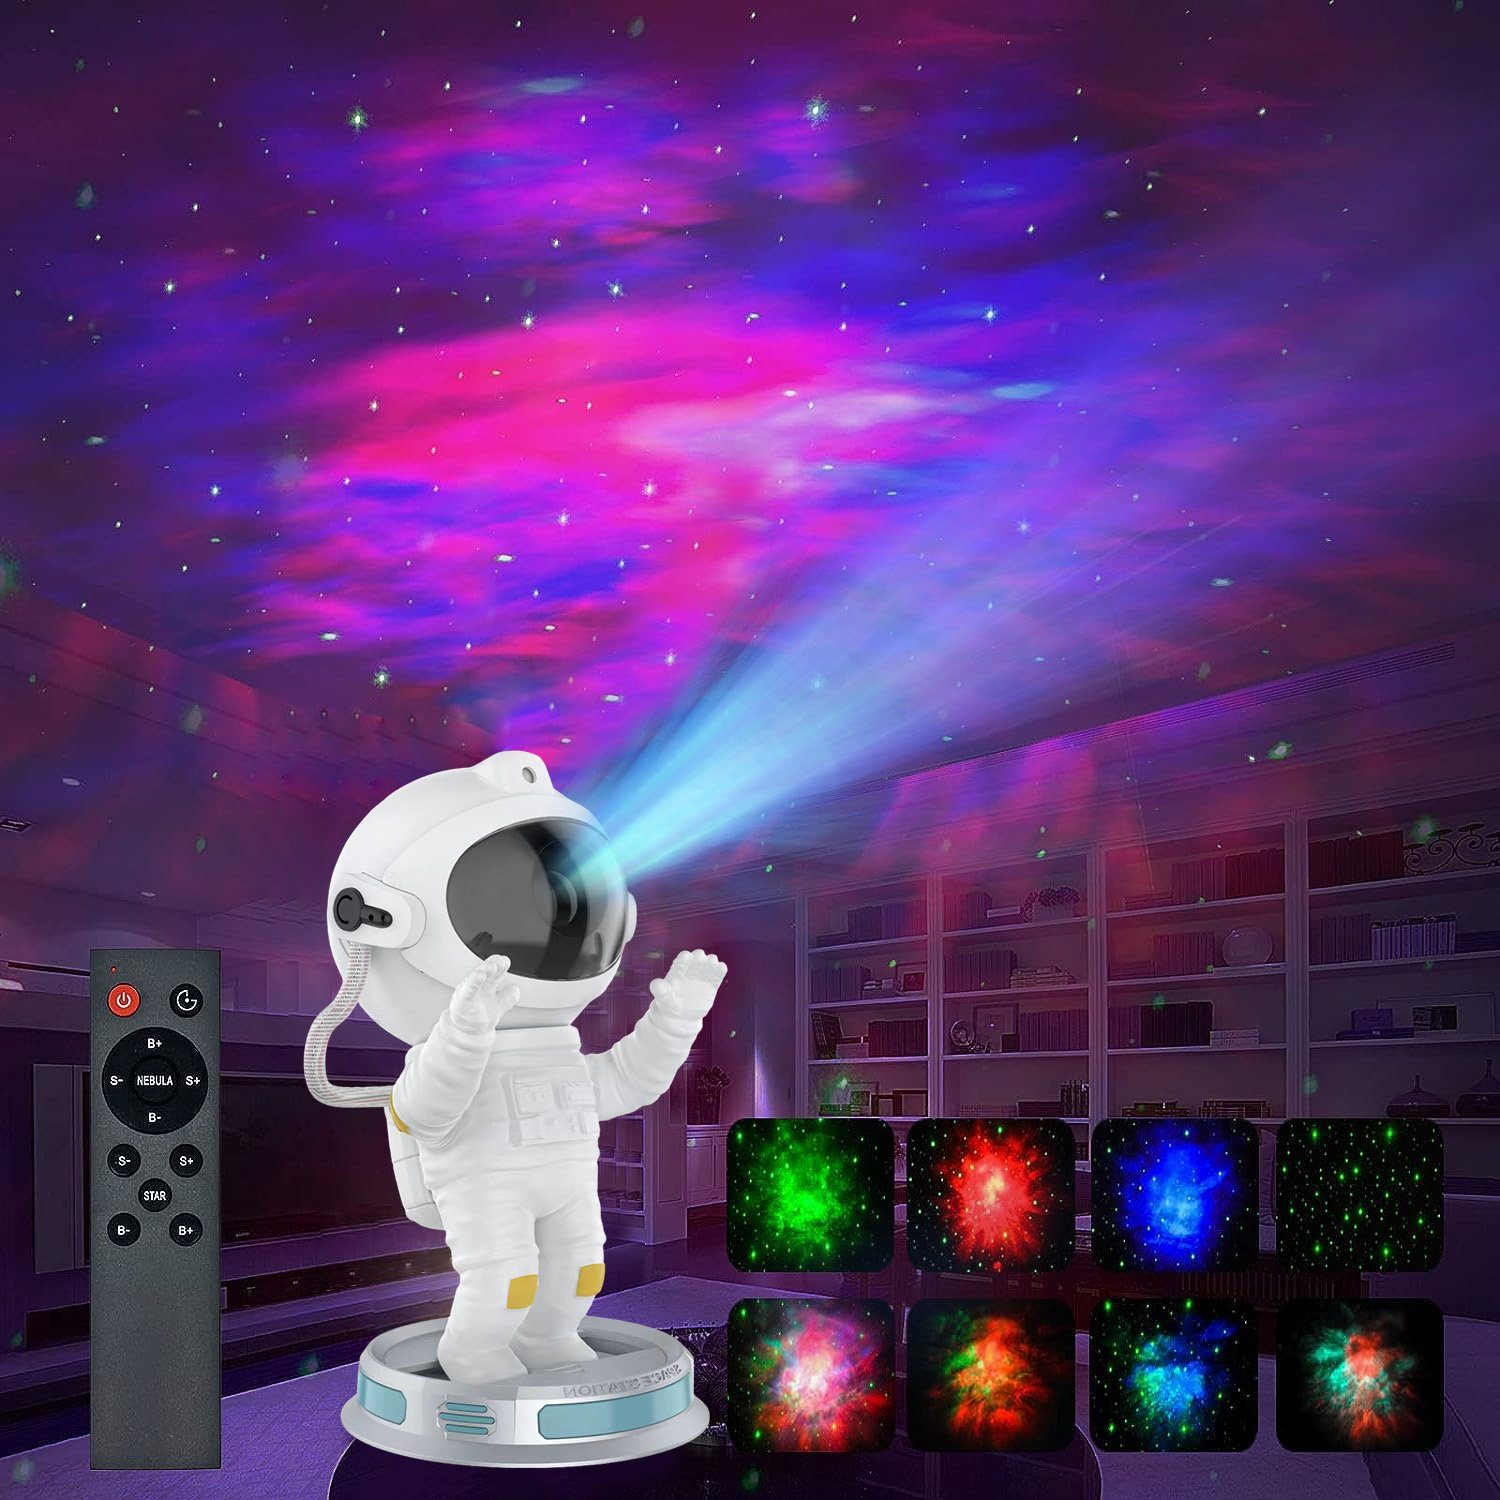 MUPOO LED-Sternenhimmel LED Projektionslampe 360° Nachttischlampe Fernbedienung&Timer, Sternenhimmel Hände Projector, Projektor verstellbar, Galaxy Astronaut erhoben LED Nachtlicht zwei